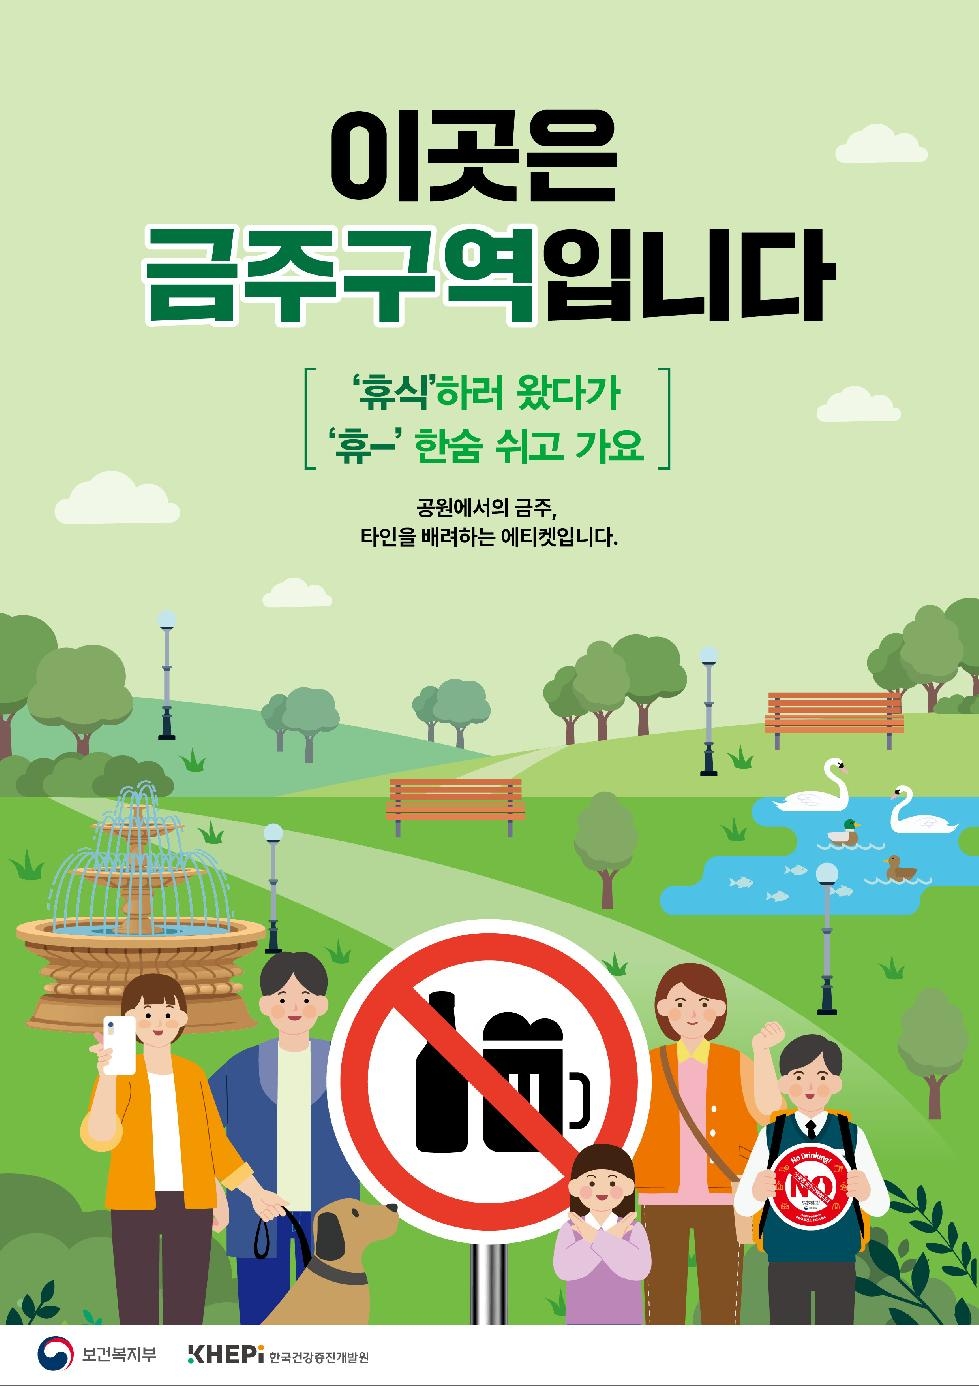 인천 동구, 건전 음주문화 조성 위한 금주구역 지정 고시